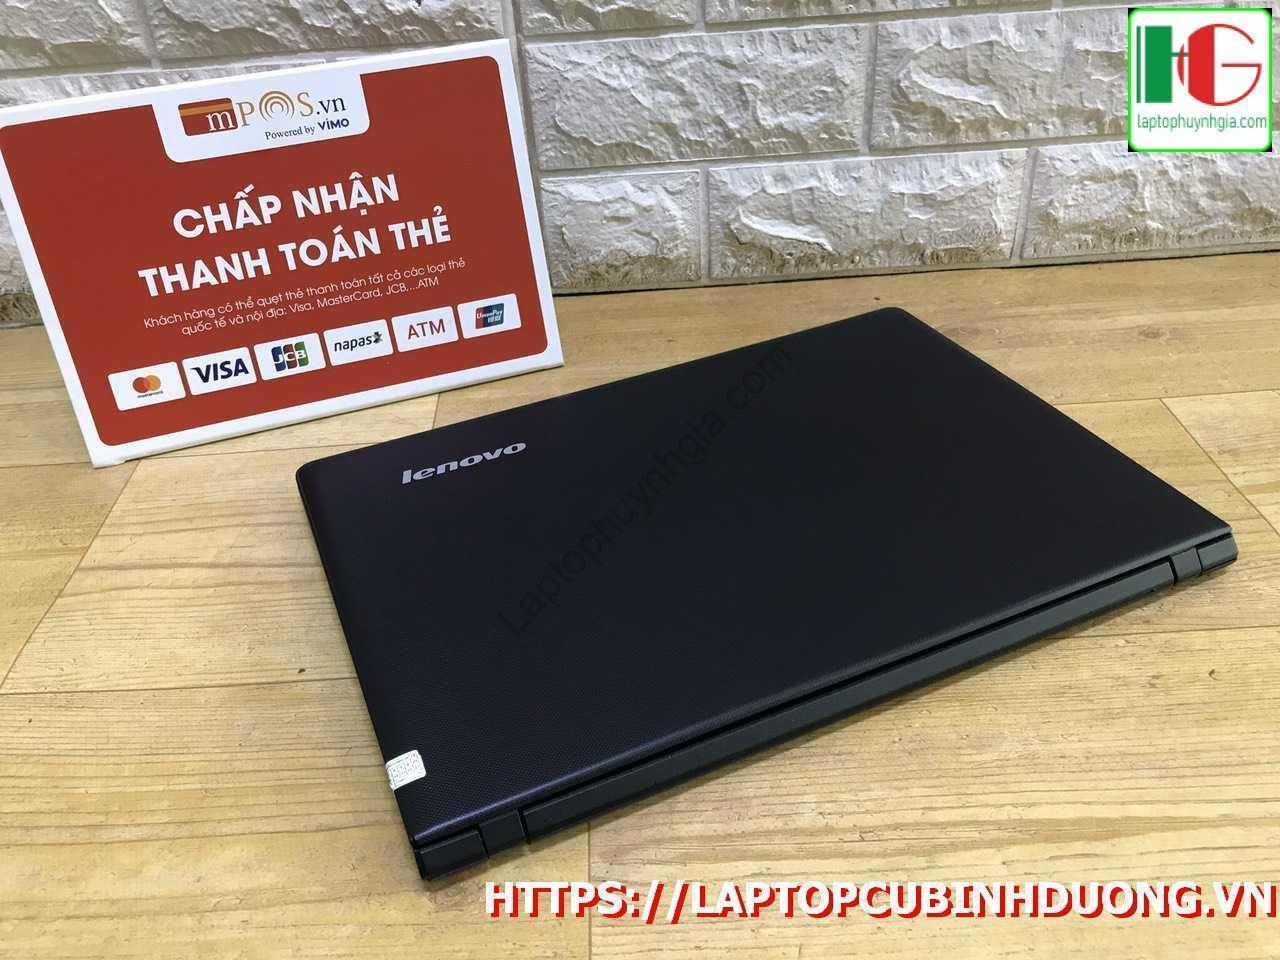 Lenovo Ipdead N2840 4g 500g Laptopcubinhduong.vn 2 [kích Thước Gốc] Result